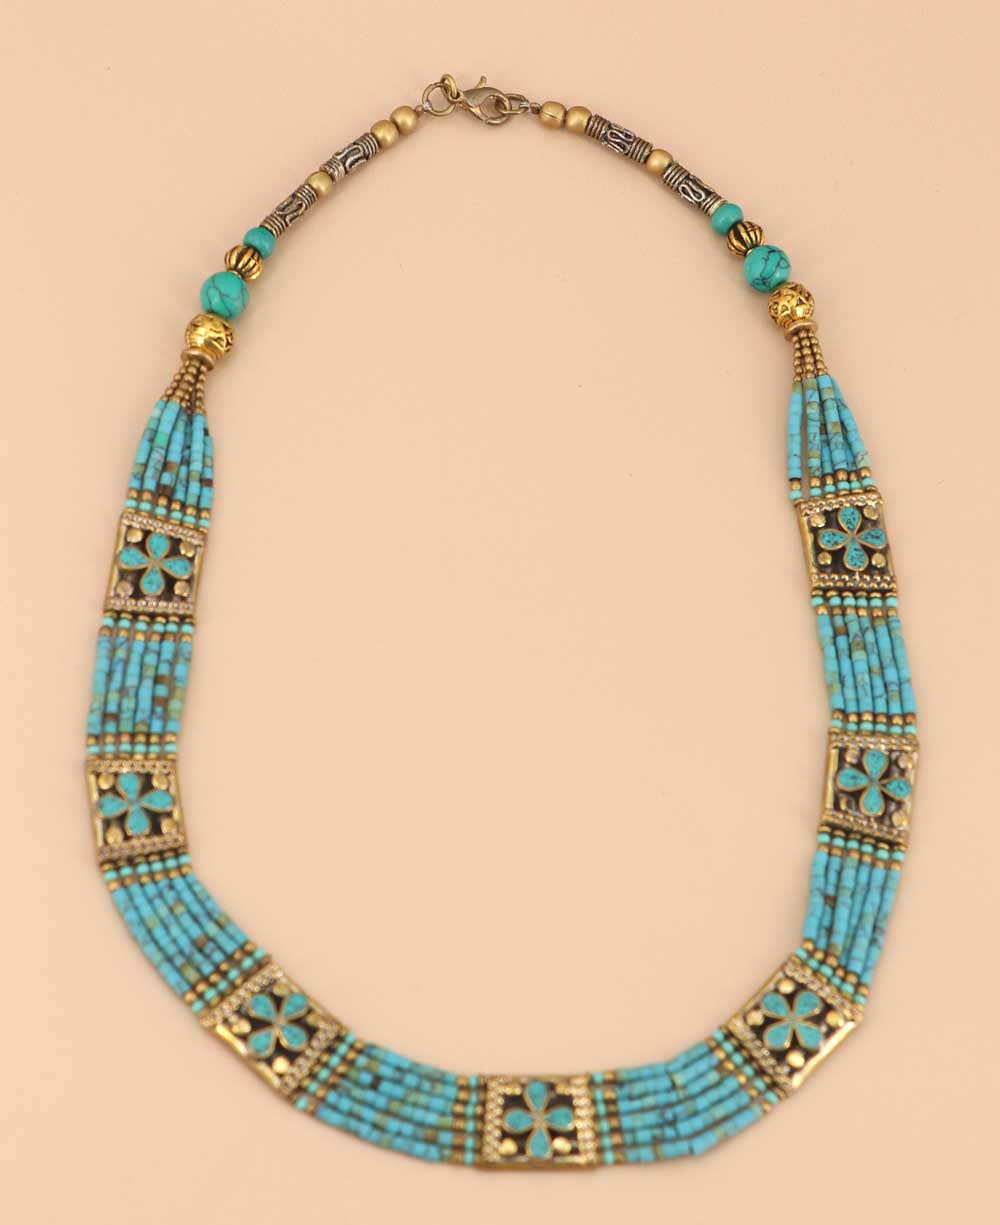 Tibetan aqua bead necklace handcrafted in Nepal